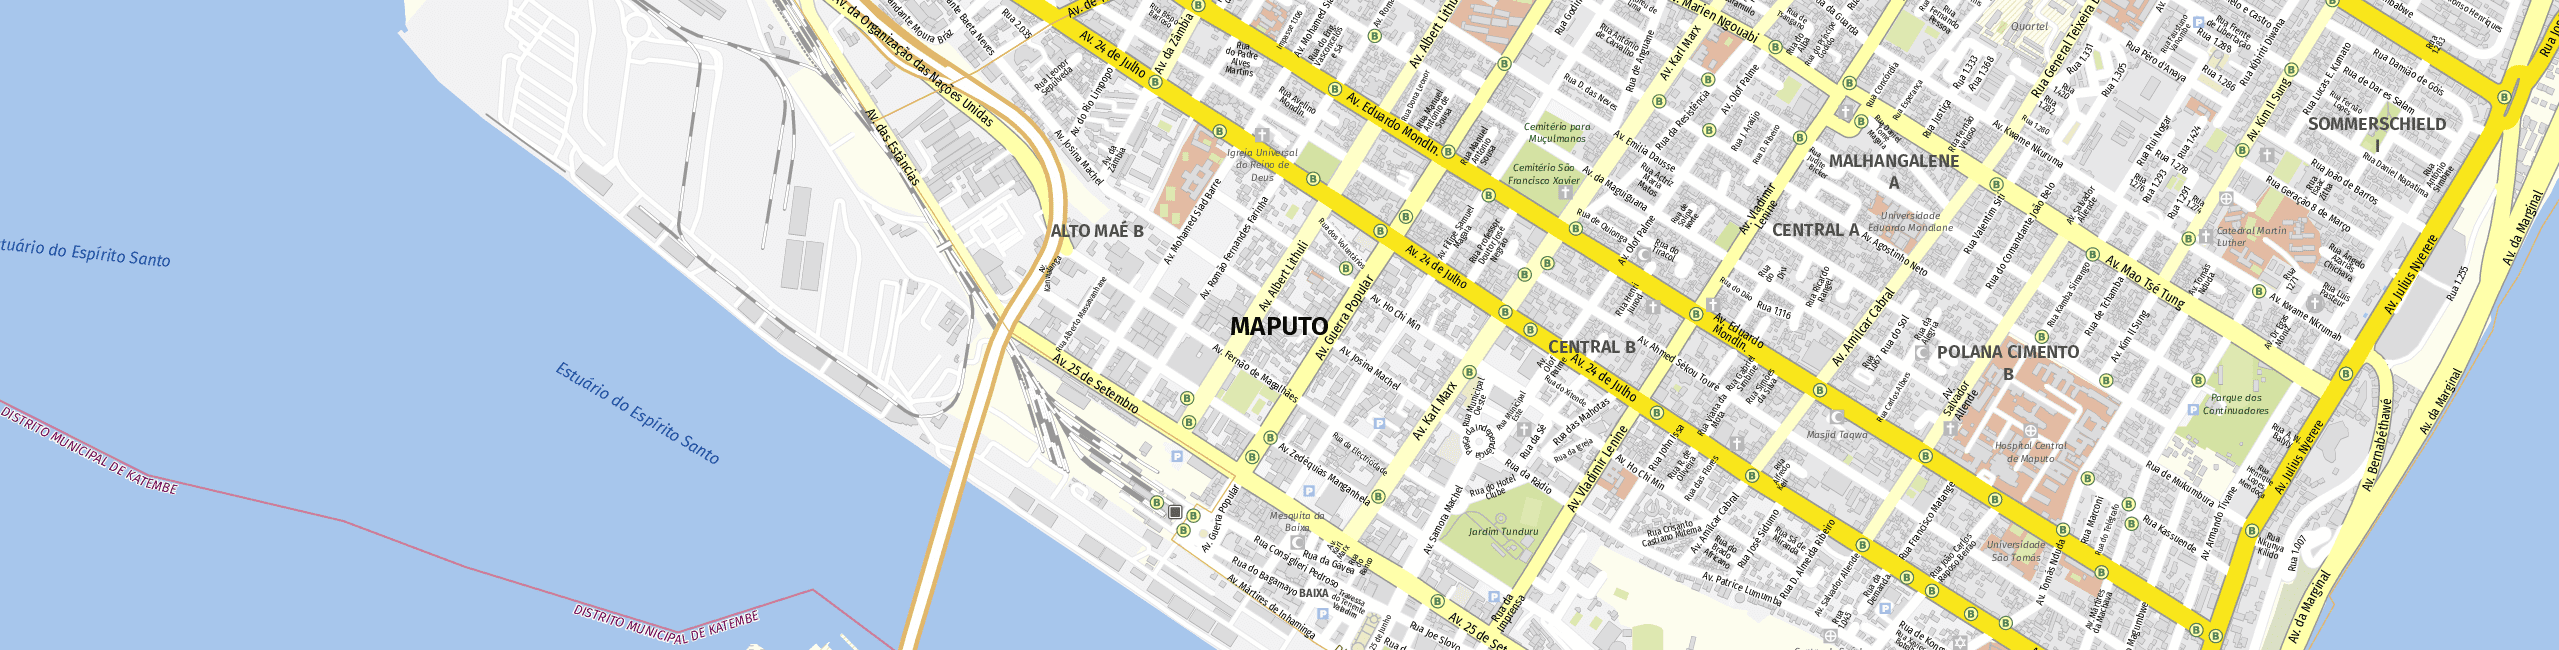 Stadtplan Maputo zum Downloaden.